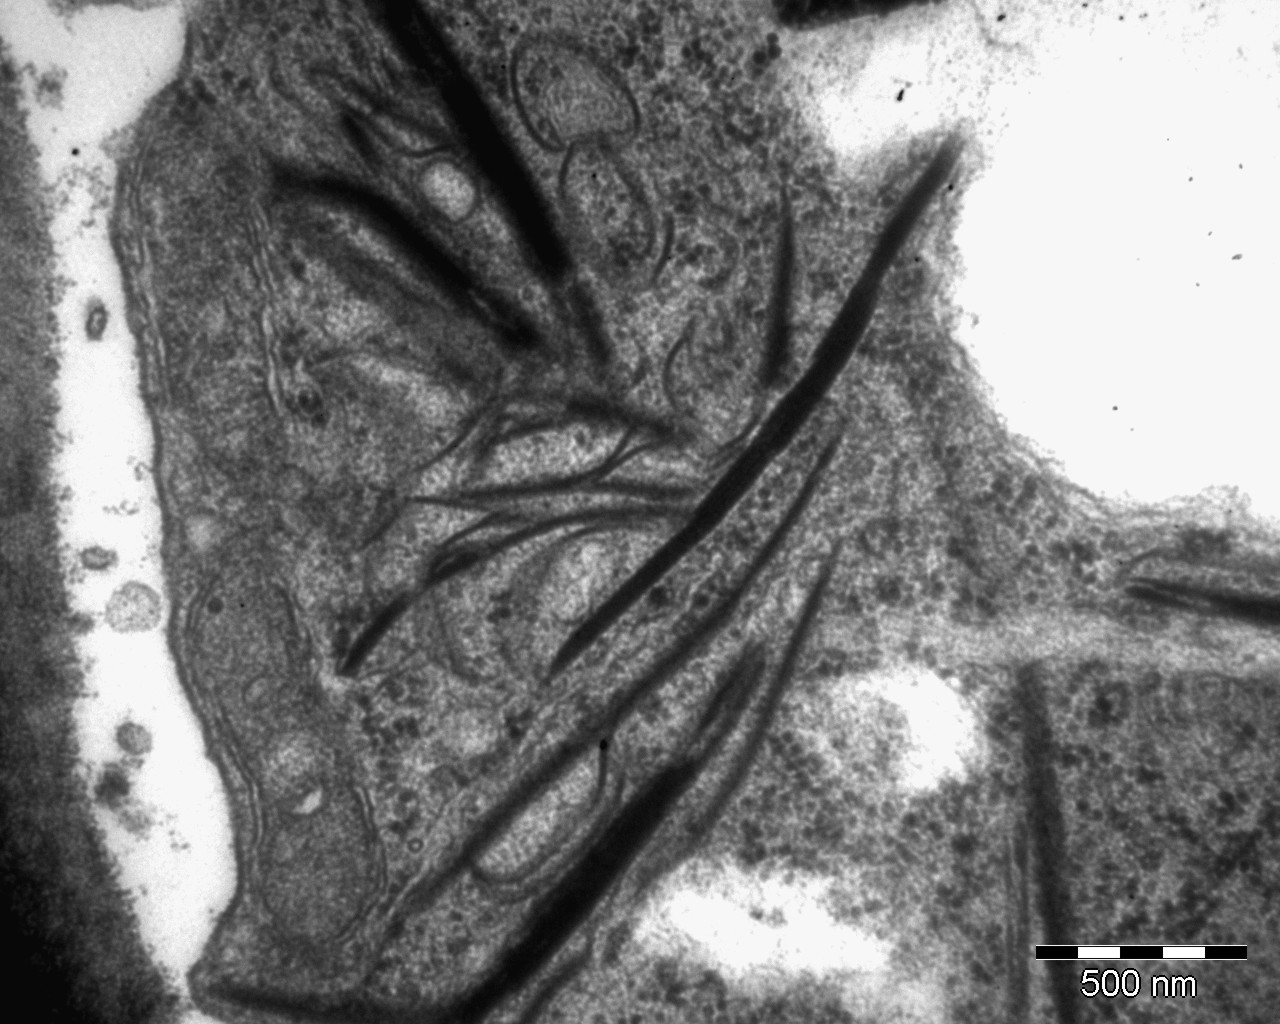 <p><b><p>Micrografia eletrônica de corte ultrafino de folha de zamioculca infectada por KoMV mostrando inclusões típicas induzidas pelo vírus.</p></b></p><p> Autor: E. W. Kitajima</p>